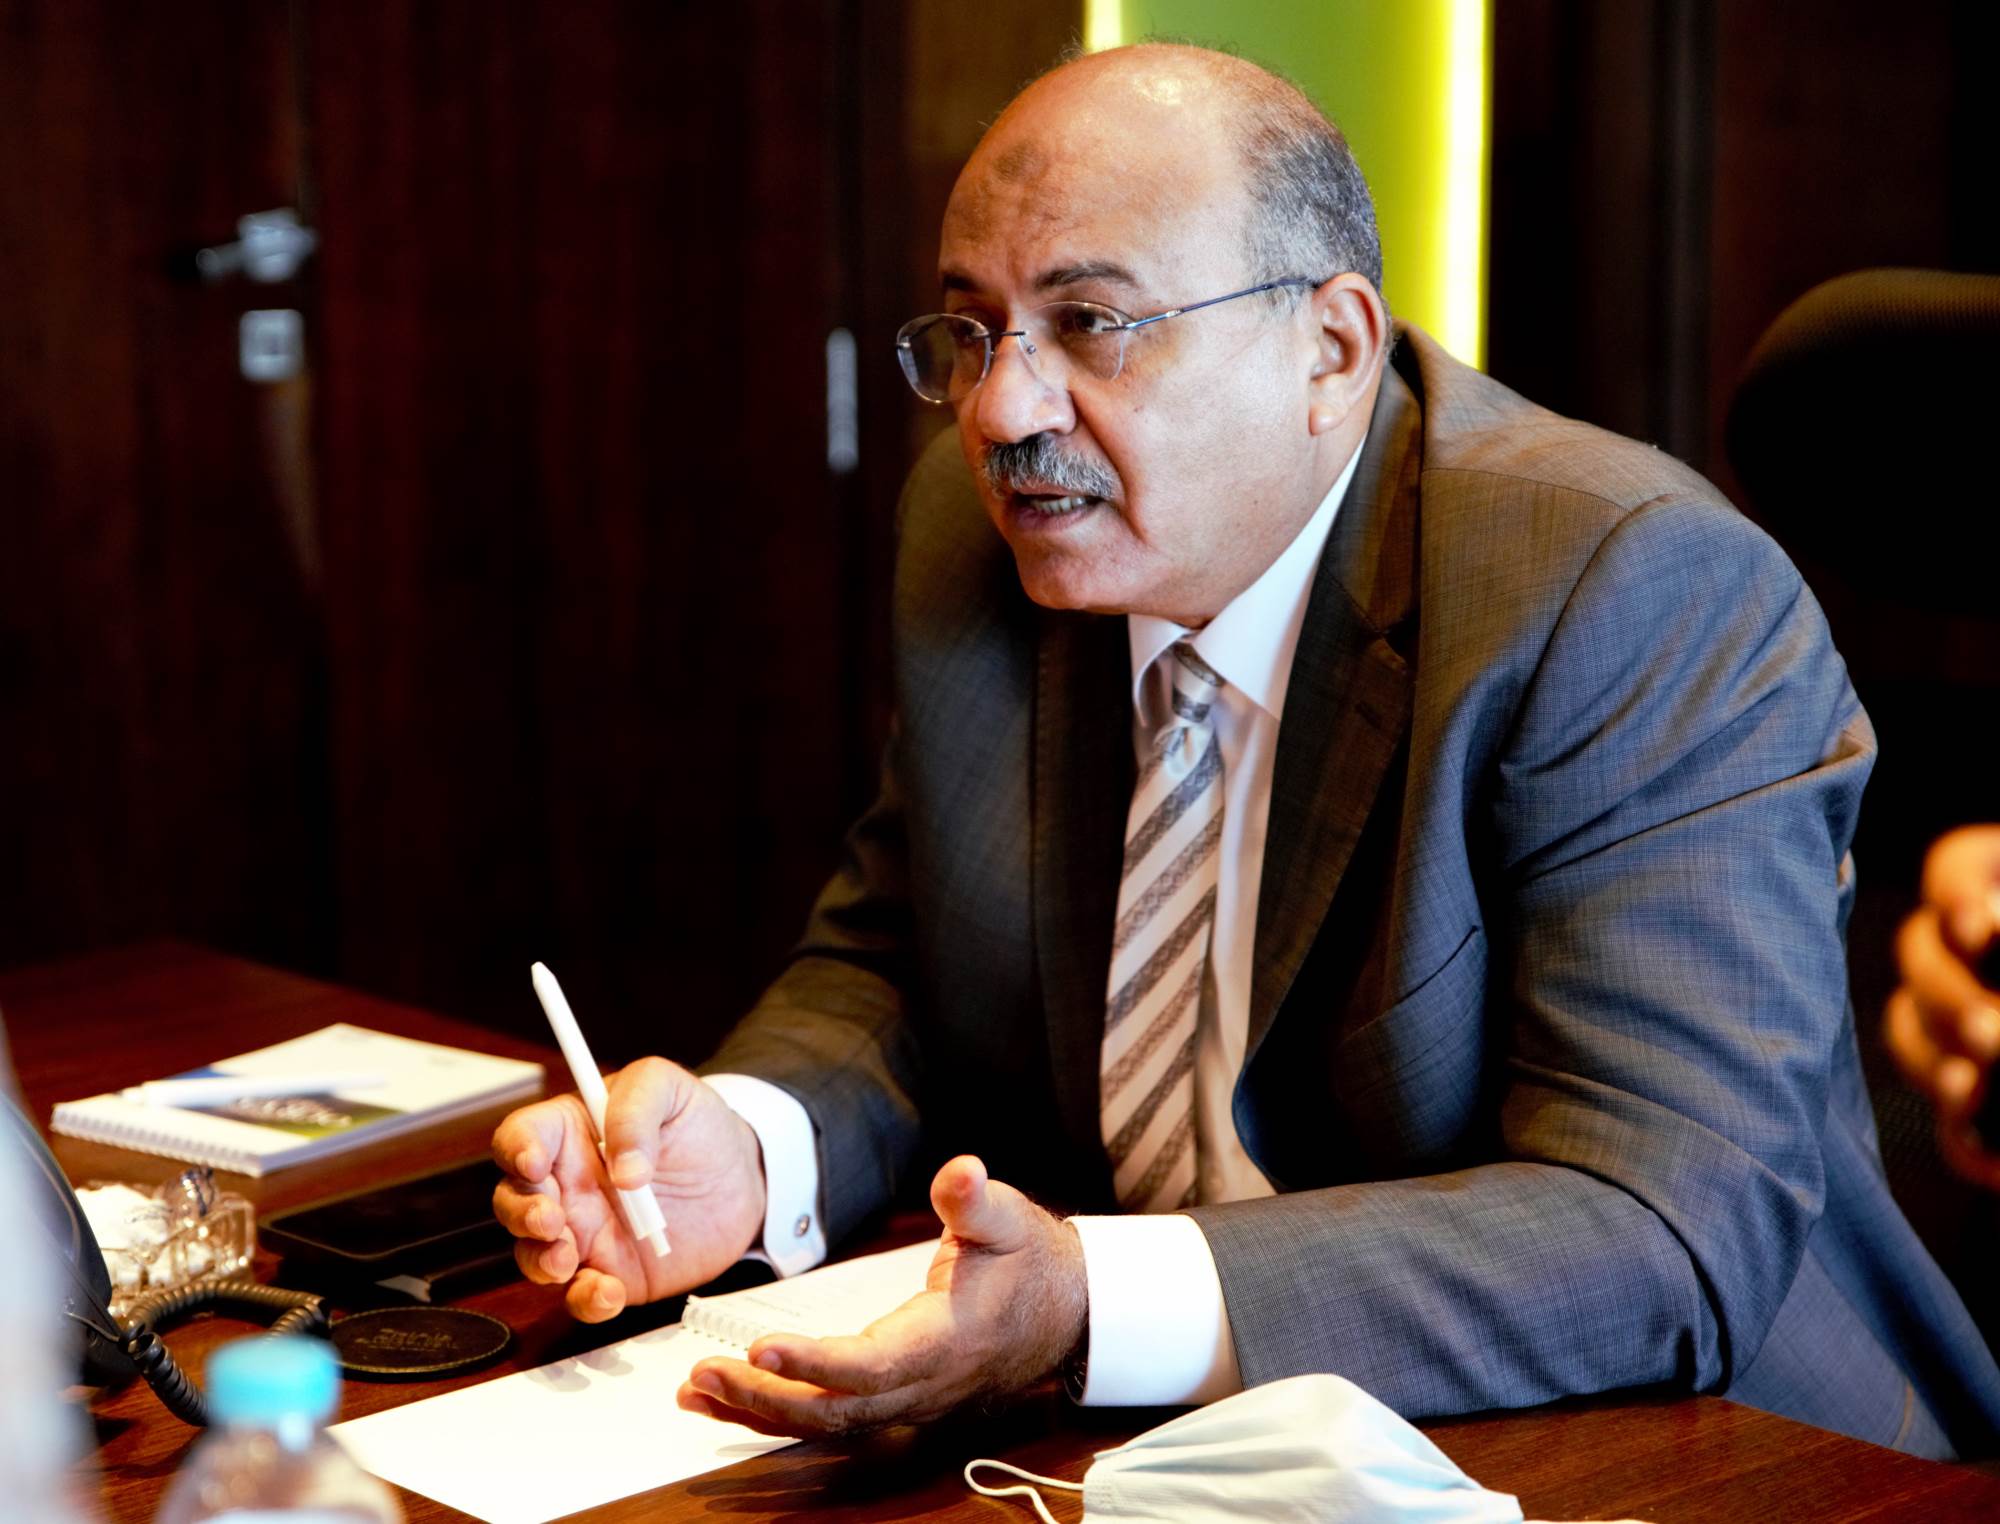  المهندس محمود حجازي، رئيس مجلس إدارة شركة أرضك للتطوير العقاري